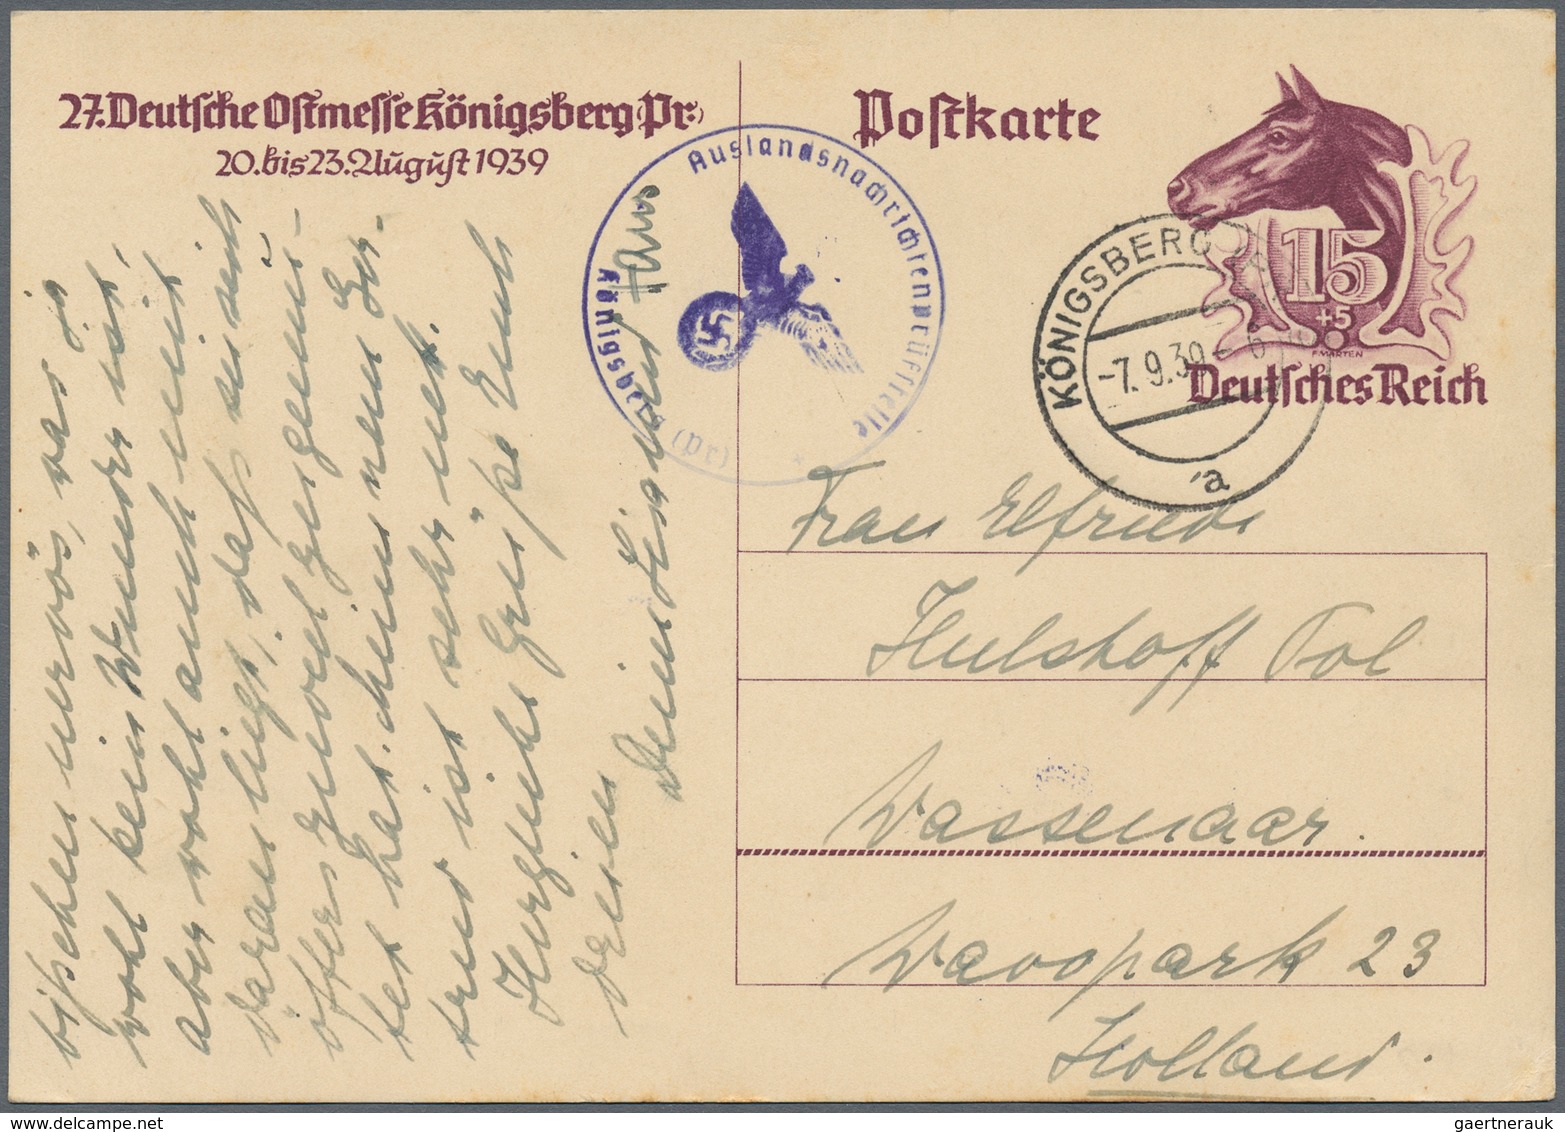 Deutsches Reich - Ganzsachen: 1874-1944, spannender Bestand mit über 1.000 Ganzsachenkarten und Umsc